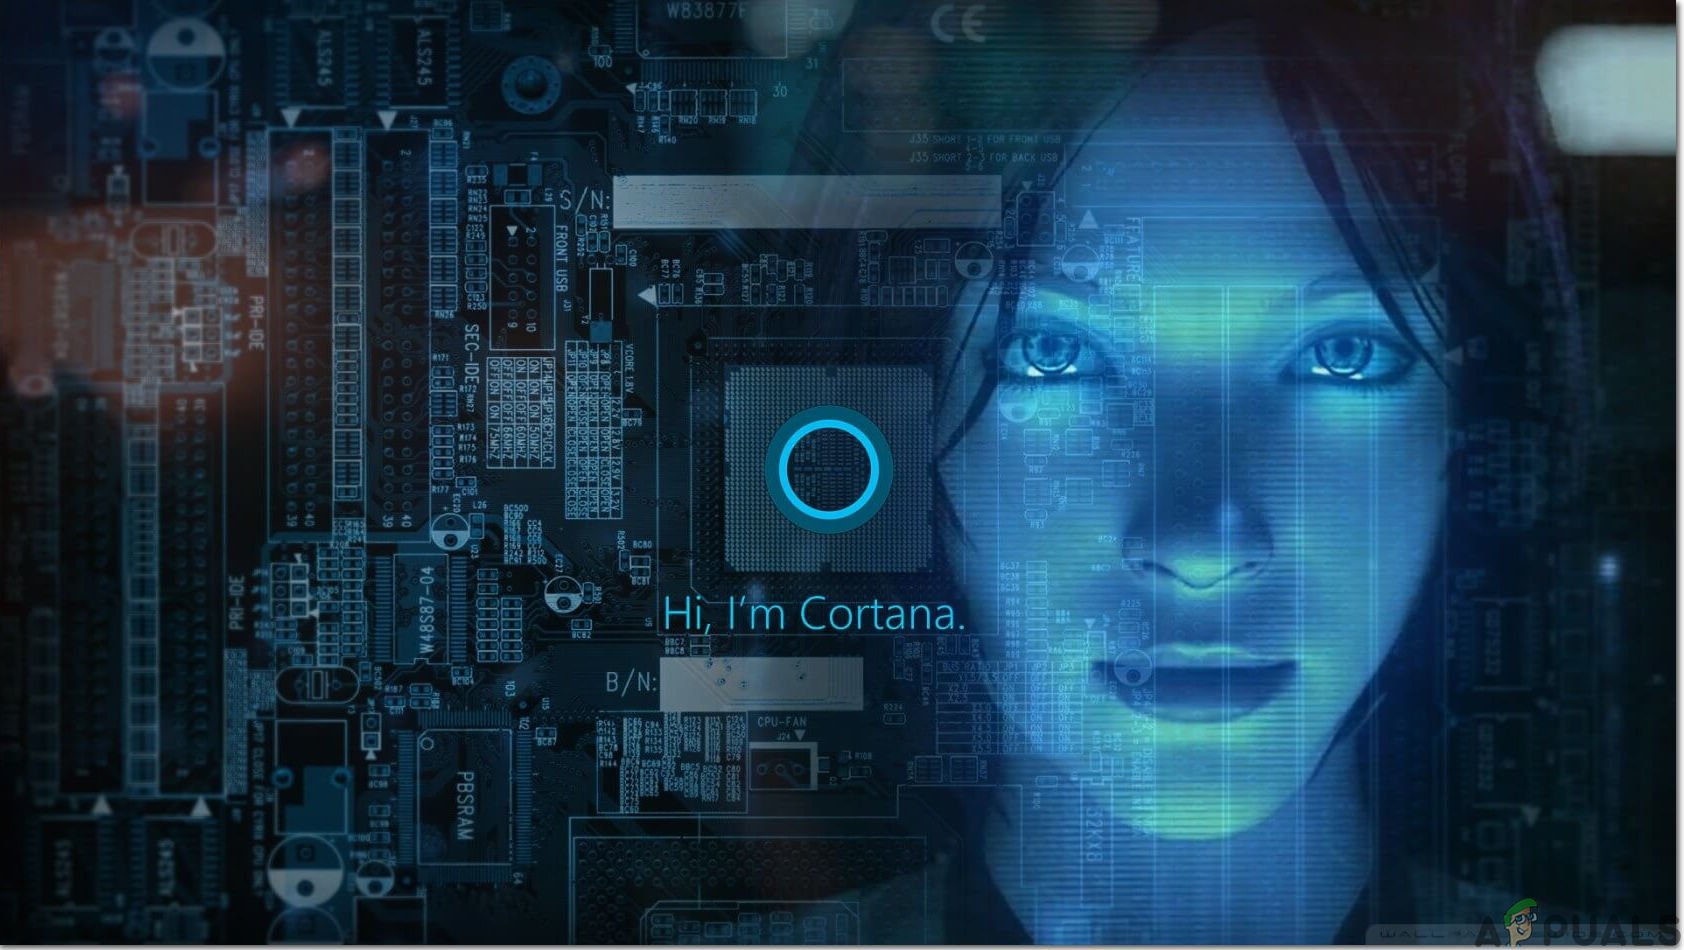 'Cortana Kullanılamıyor' Hatasına Neden Olan Windows 10 20H1 Mayıs 2020 Güncellemesi v2004, Nasıl Onarılır